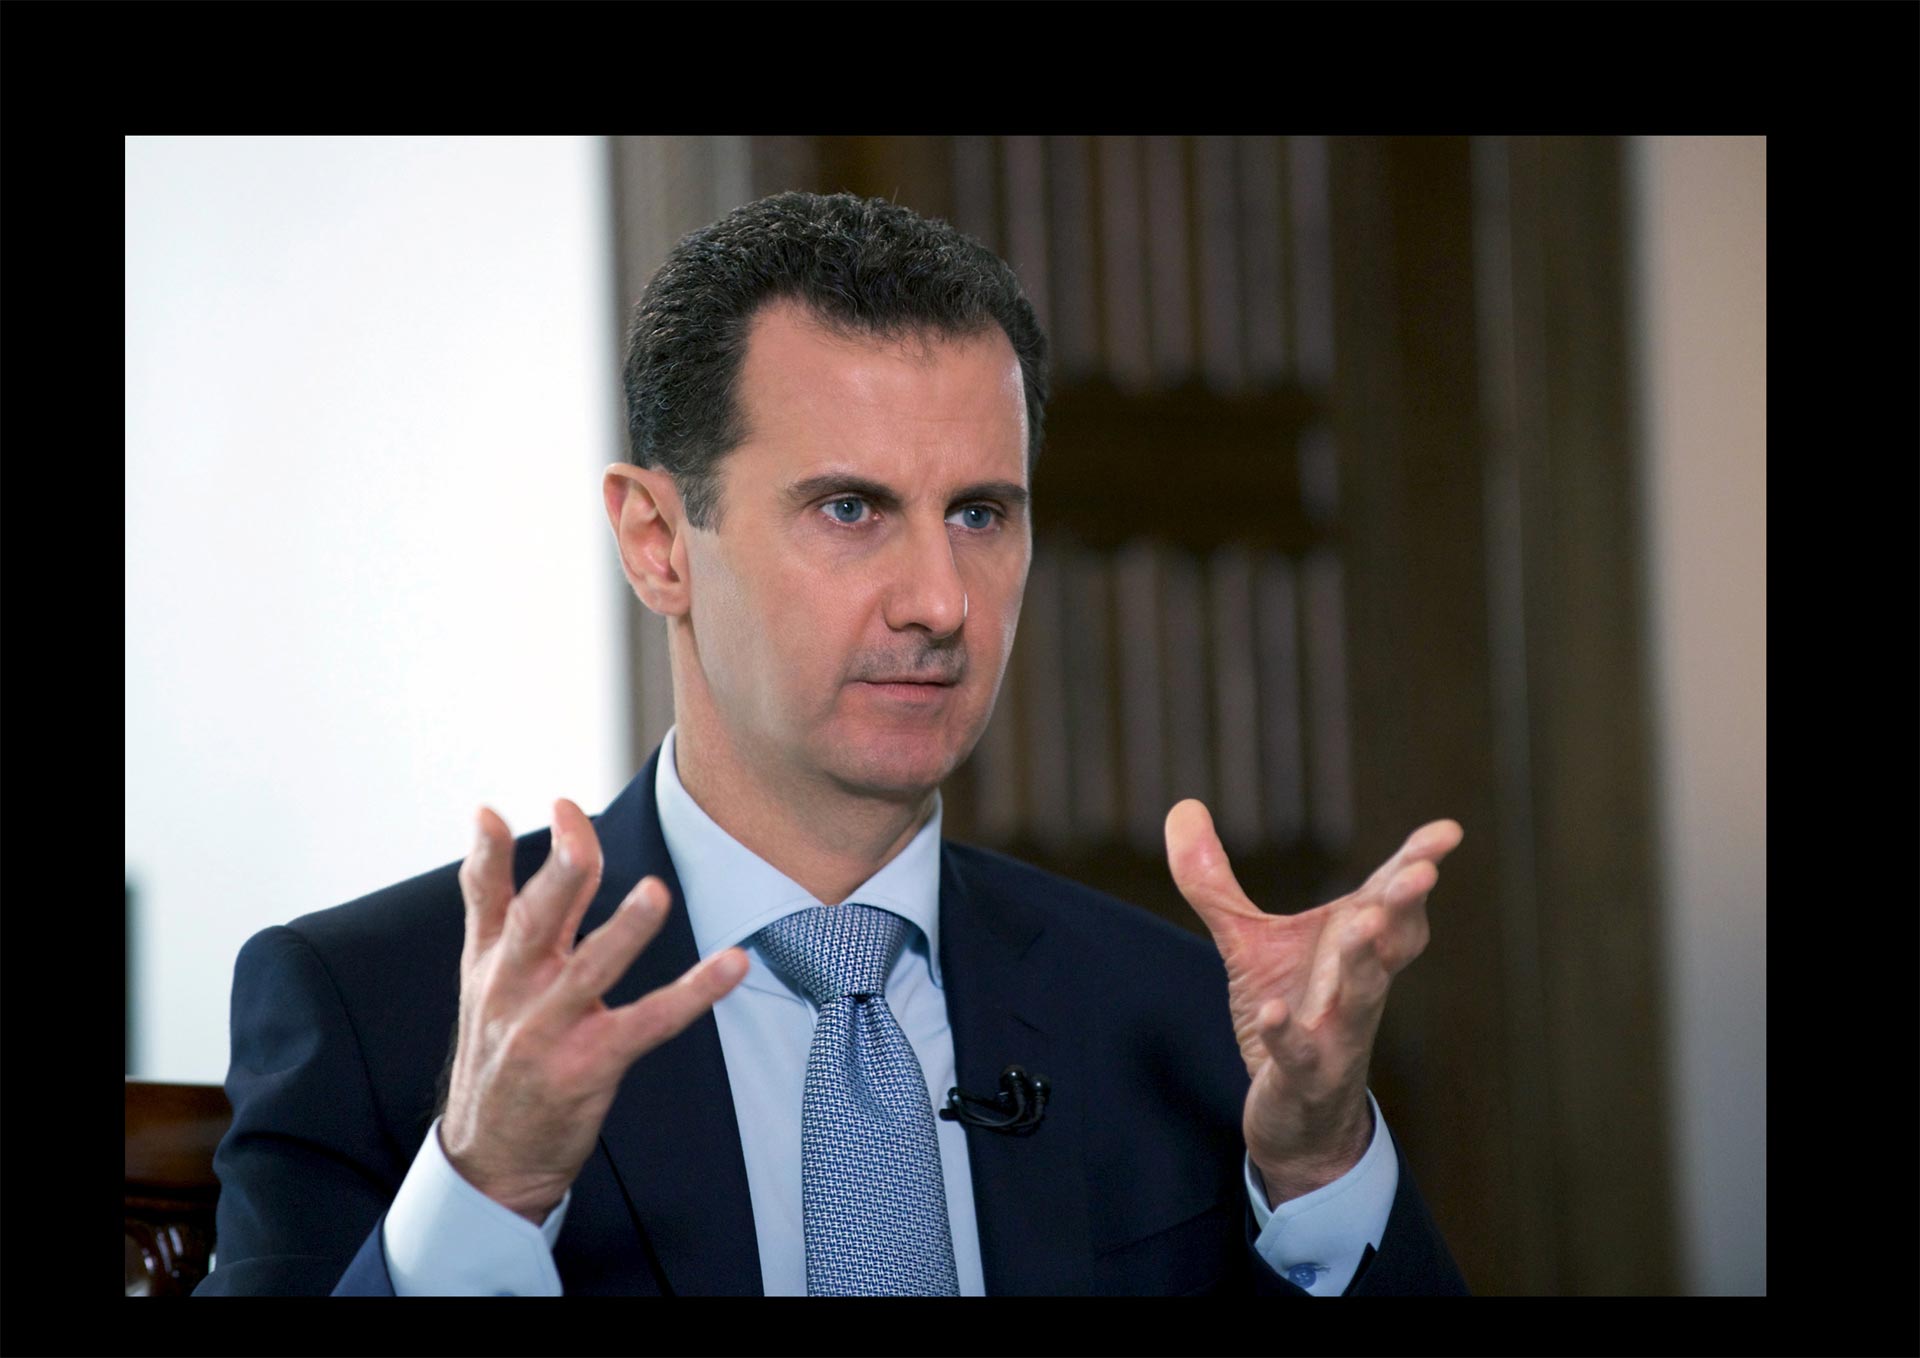 El mandato del presidente sirio ha estado marcado por la guerra civil que atraviesa el país